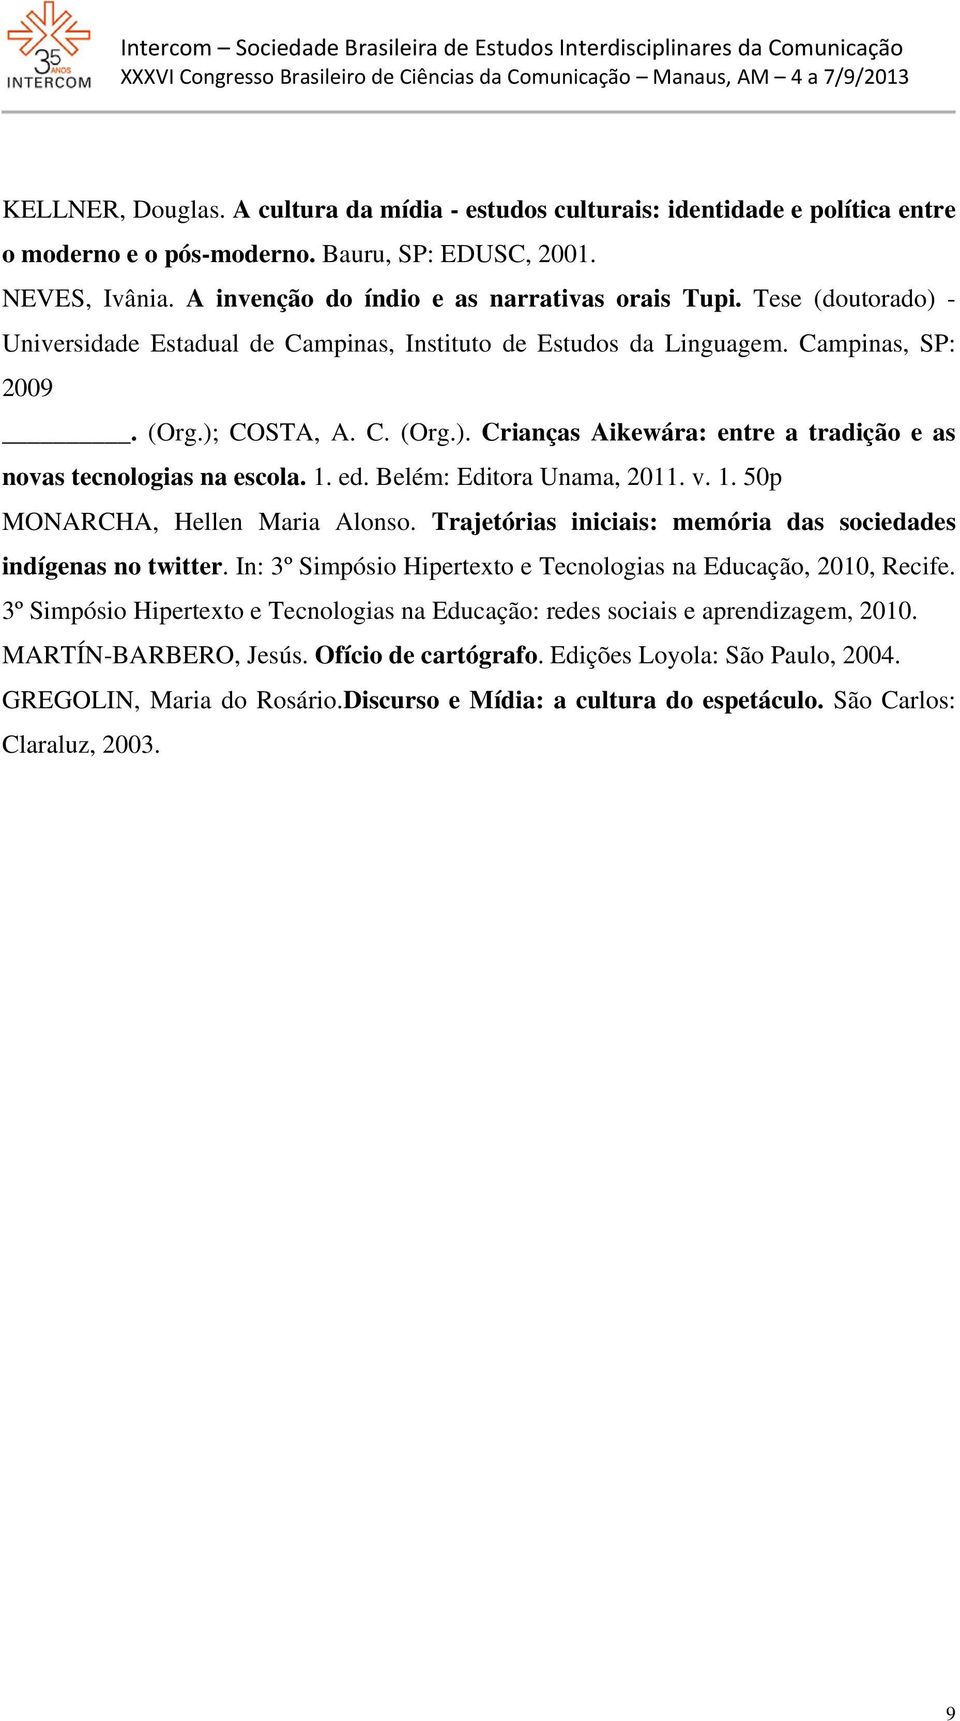 1. ed. Belém: Editora Unama, 2011. v. 1. 50p MONARCHA, Hellen Maria Alonso. Trajetórias iniciais: memória das sociedades indígenas no twitter.